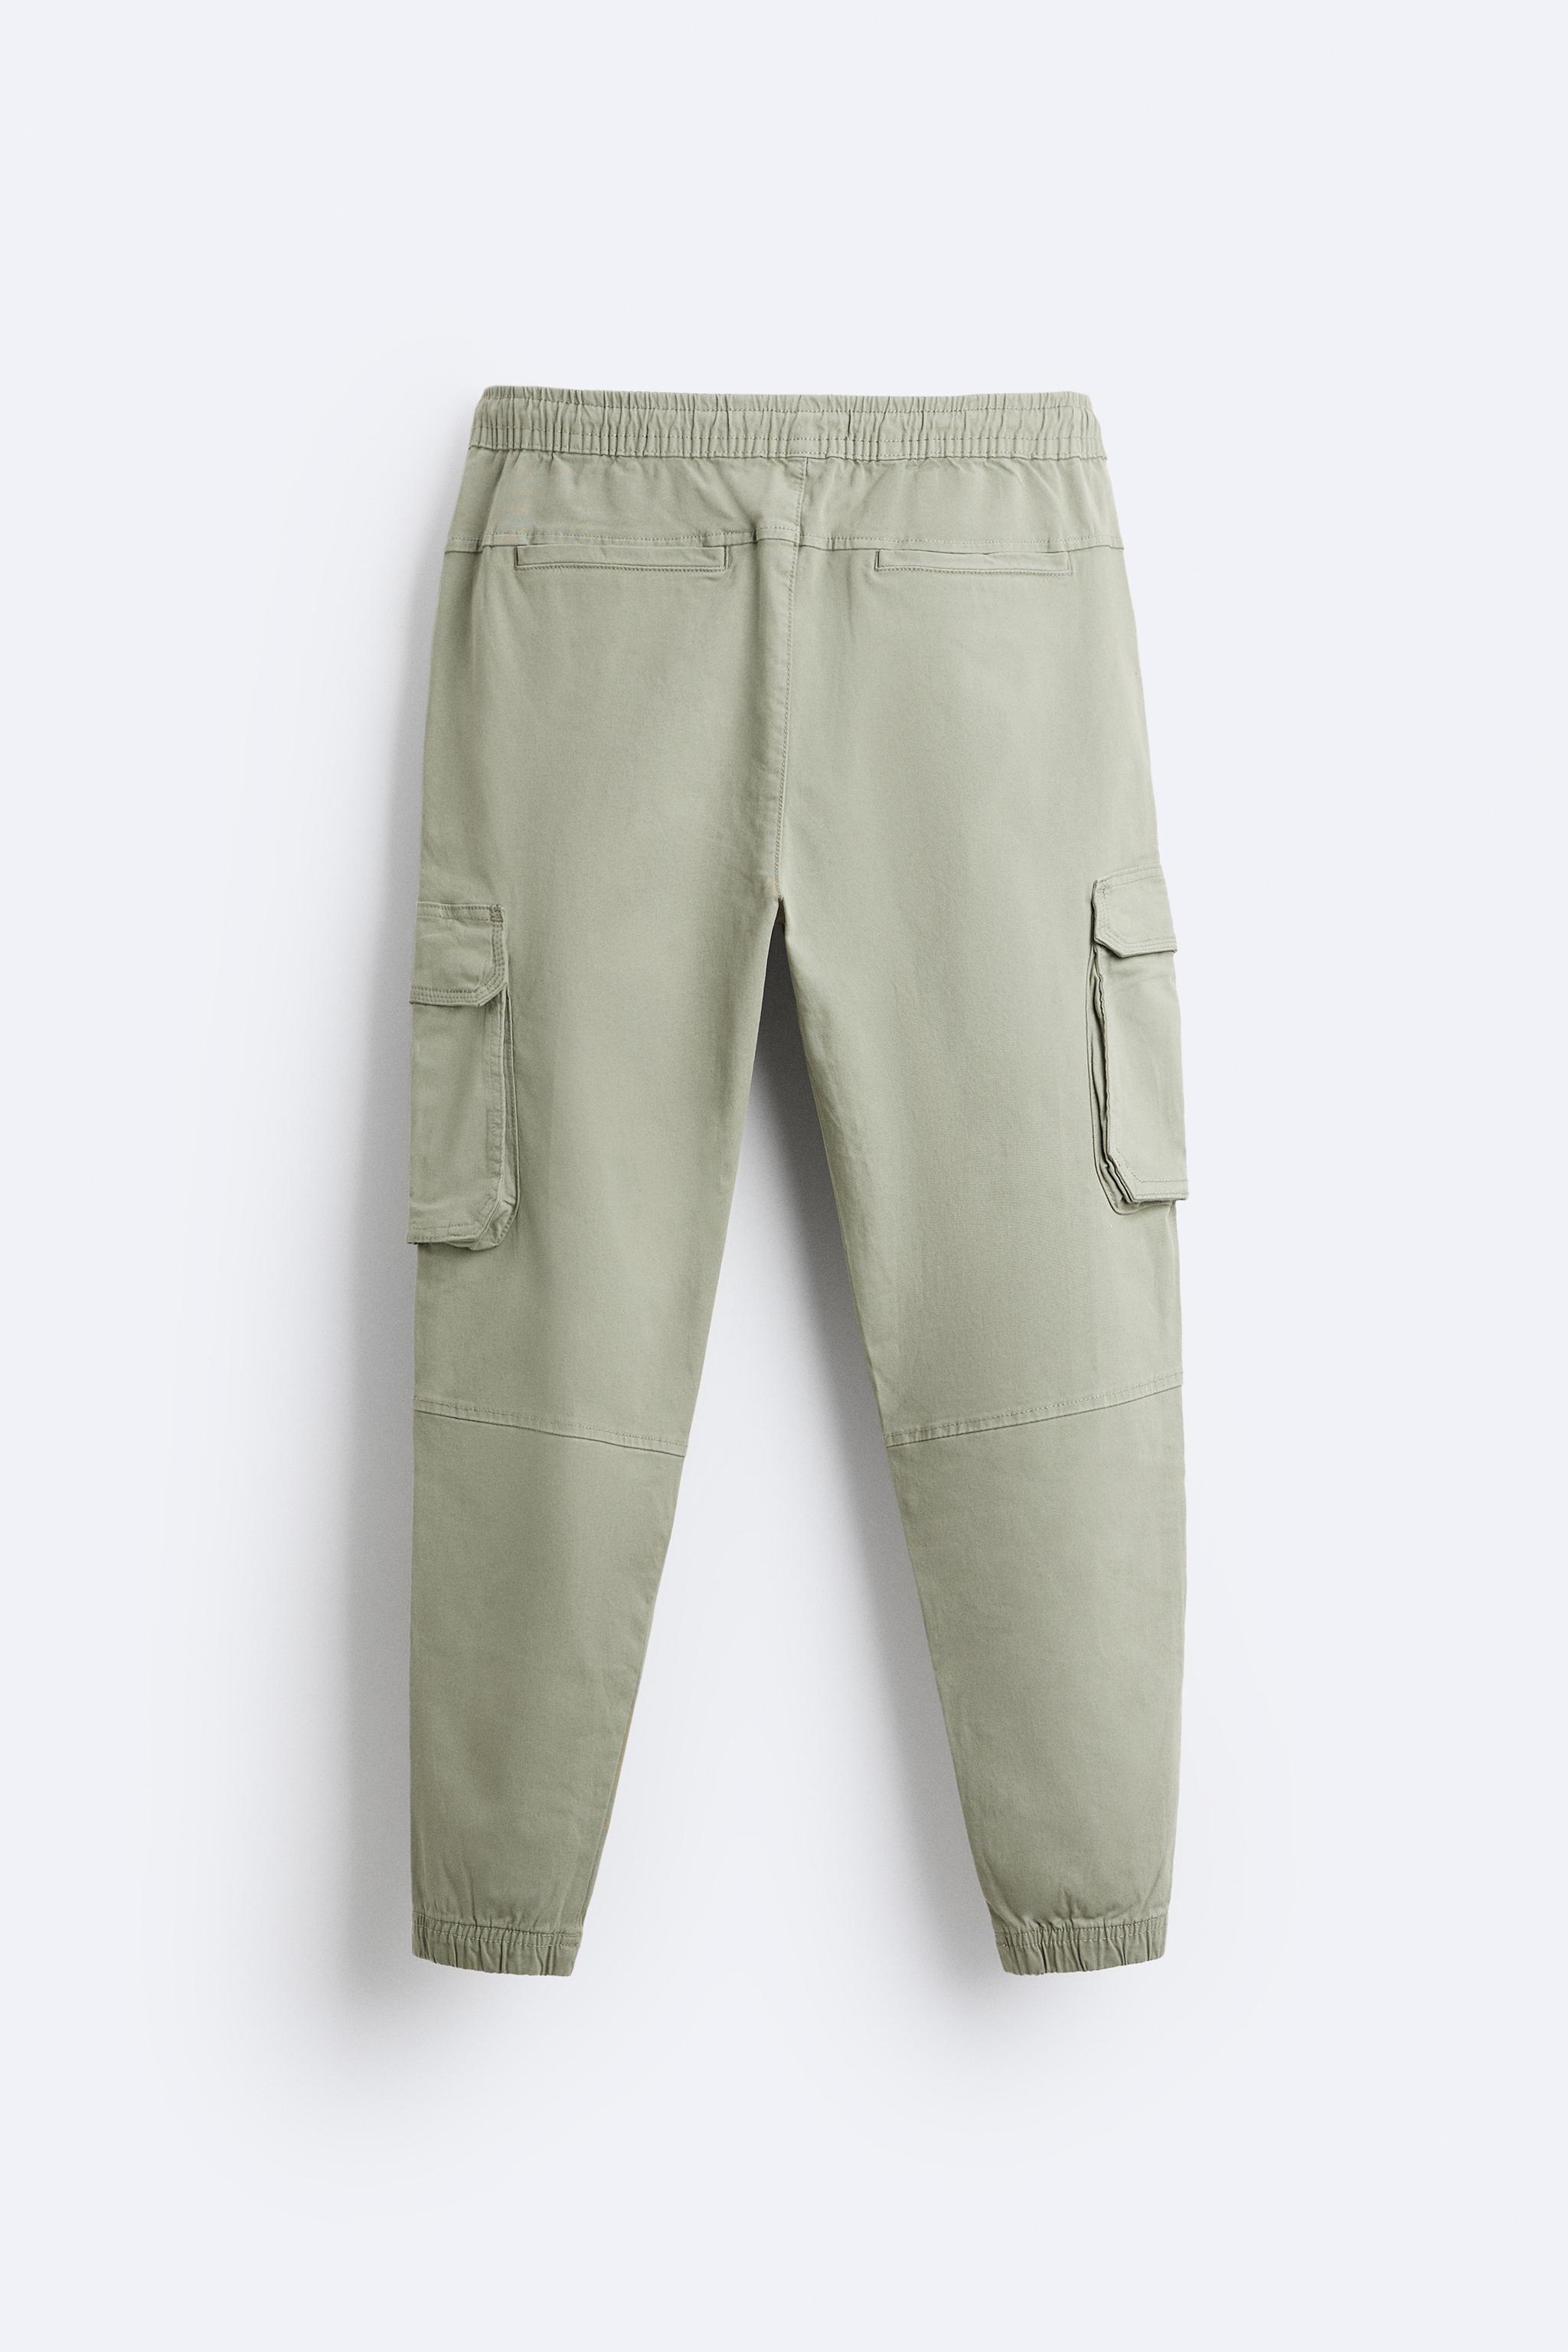 Zara, Pants, Cargo Joggersjeans